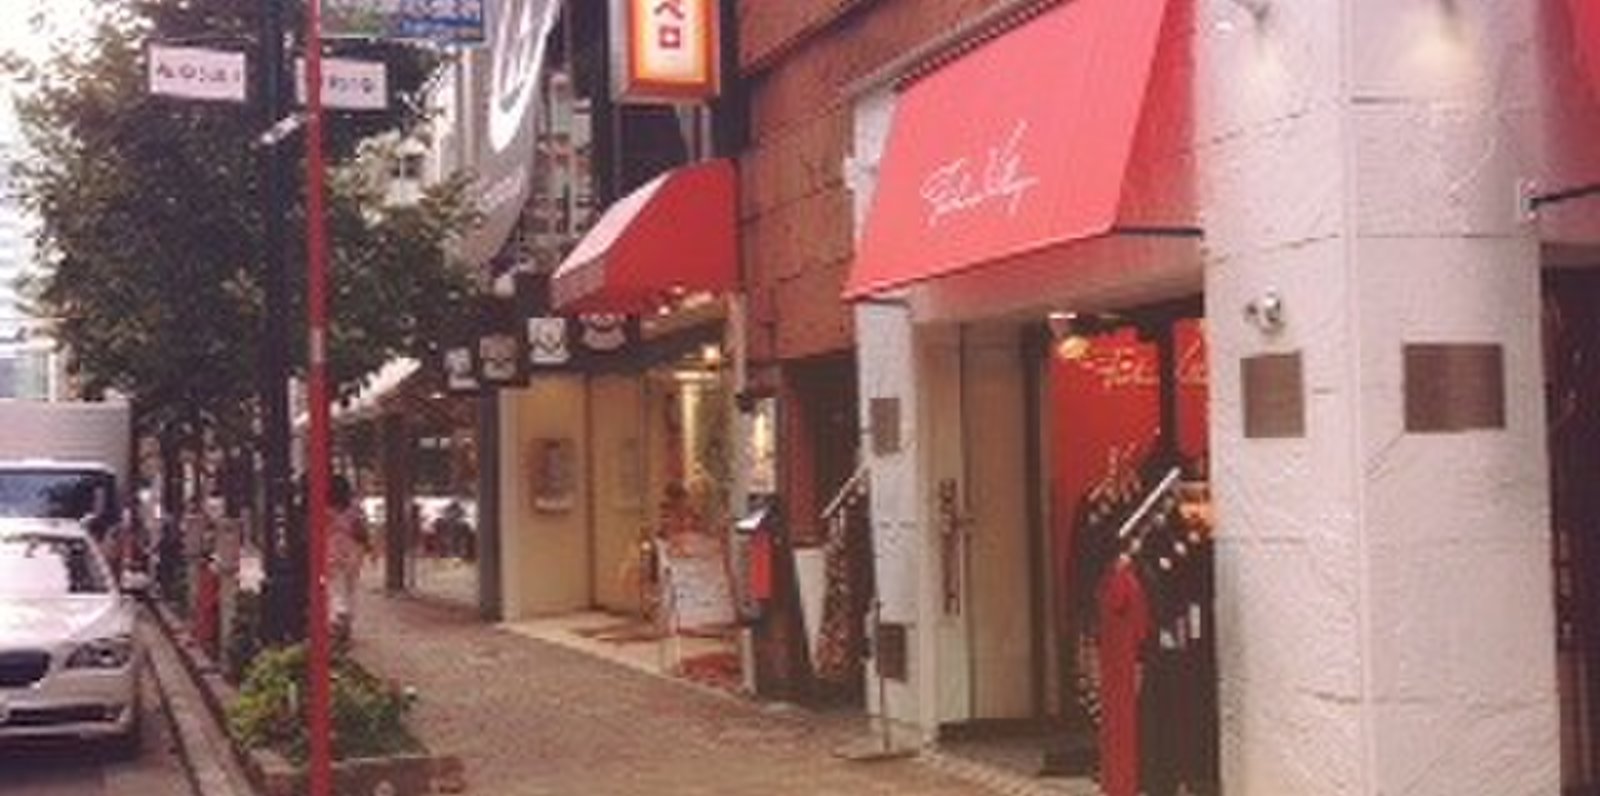 【閉店】スペイン料理銀座エスペロ みゆき通り店